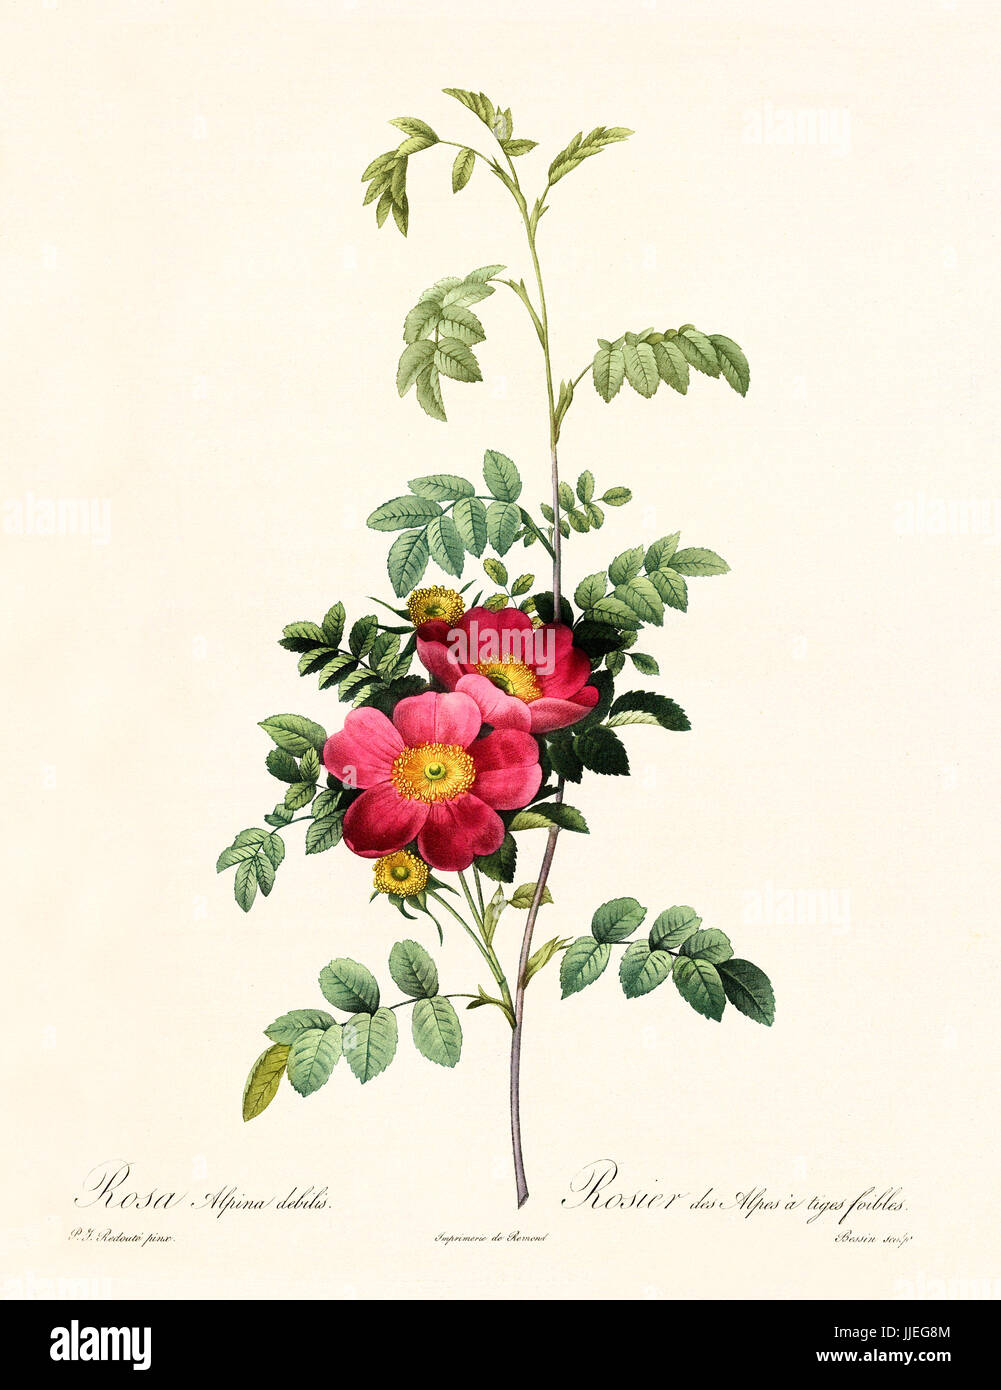 Vecchia illustrazione di Rosa alpina debilis. Creato da P. R. Redoute, pubblicato su Les Roses, Imp. Firmin Didot, Parigi, 1817-24 Foto Stock